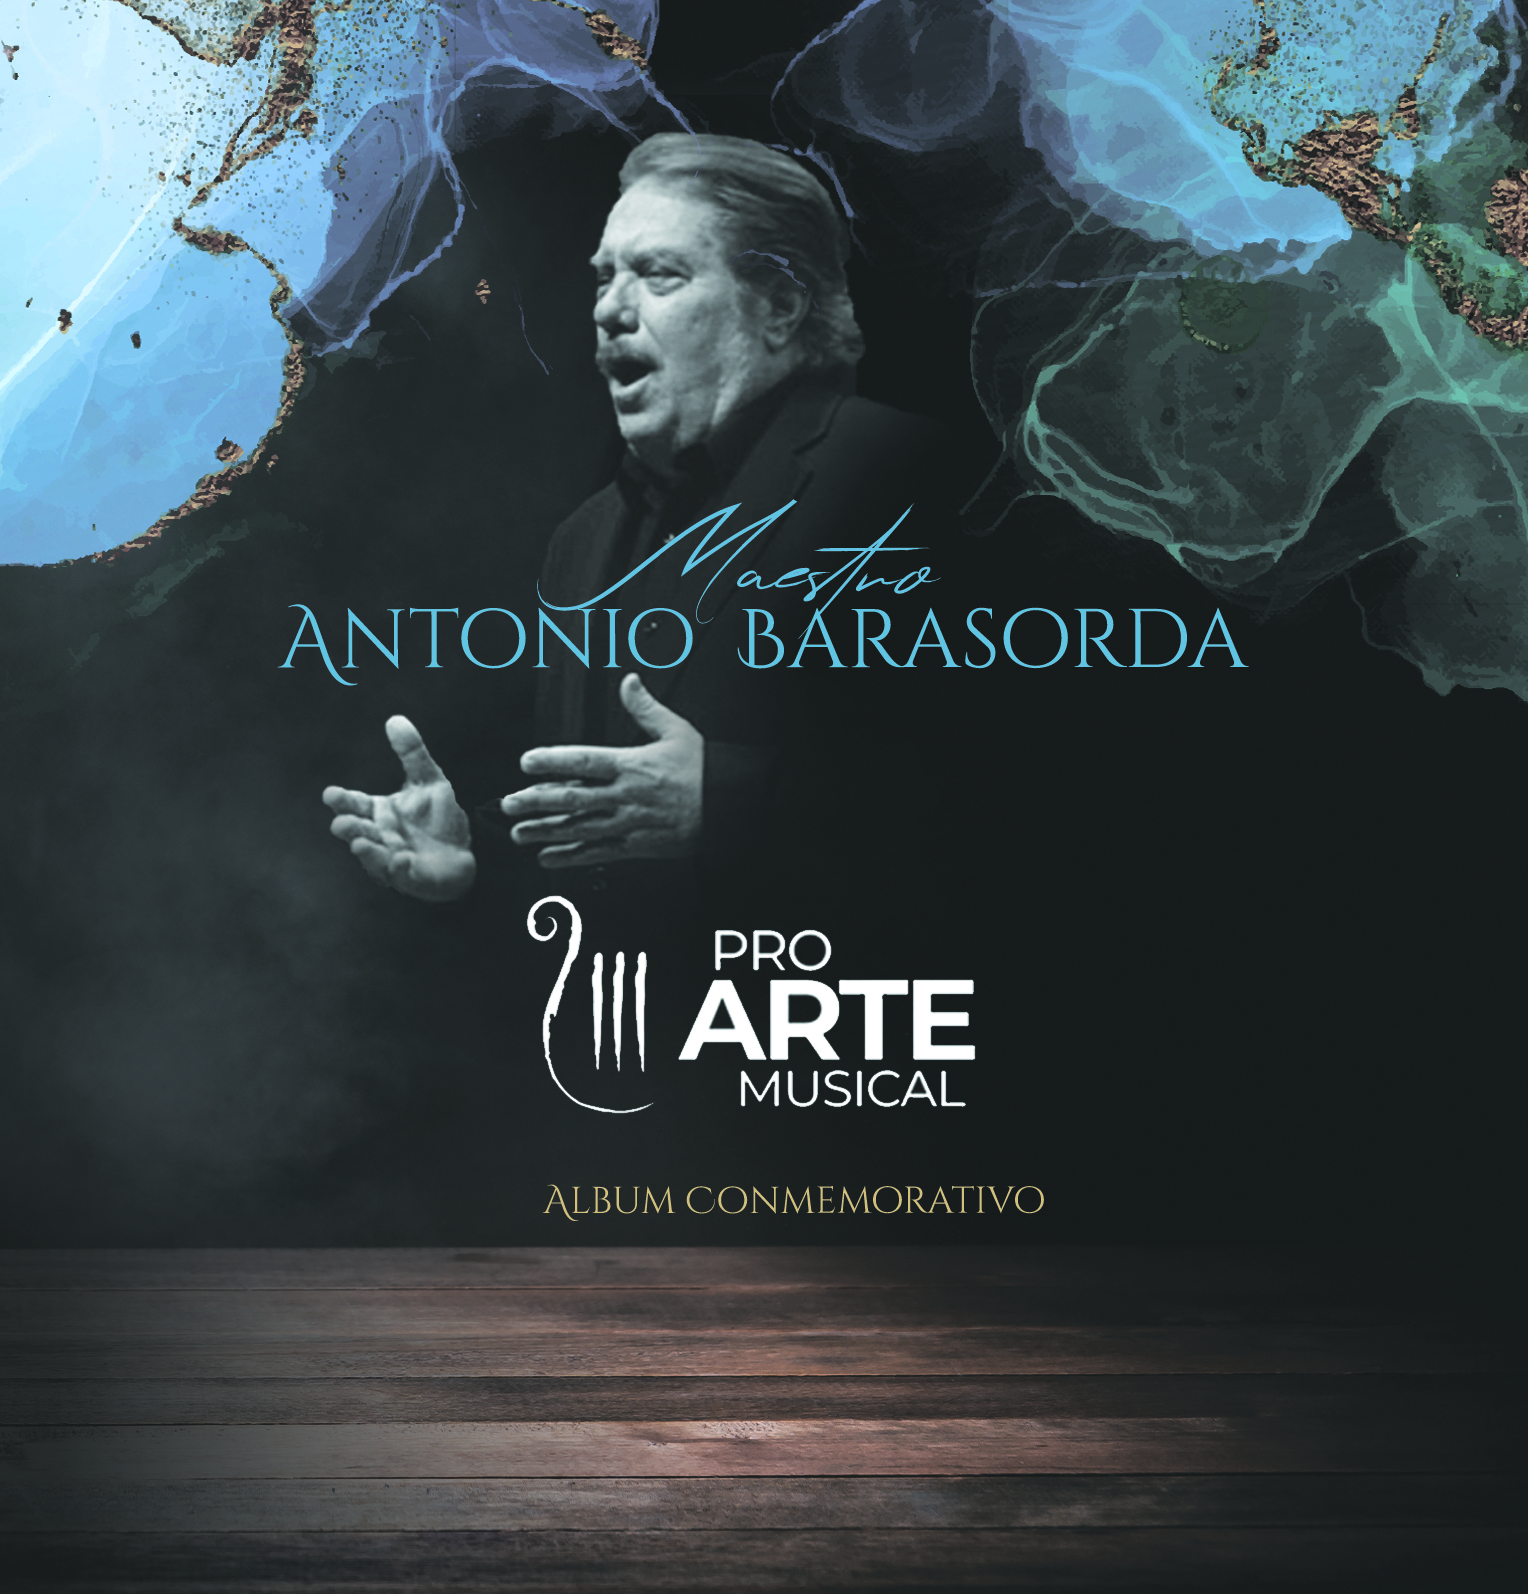 Álbum conmemorativo: Maestro Antonio Barasorda